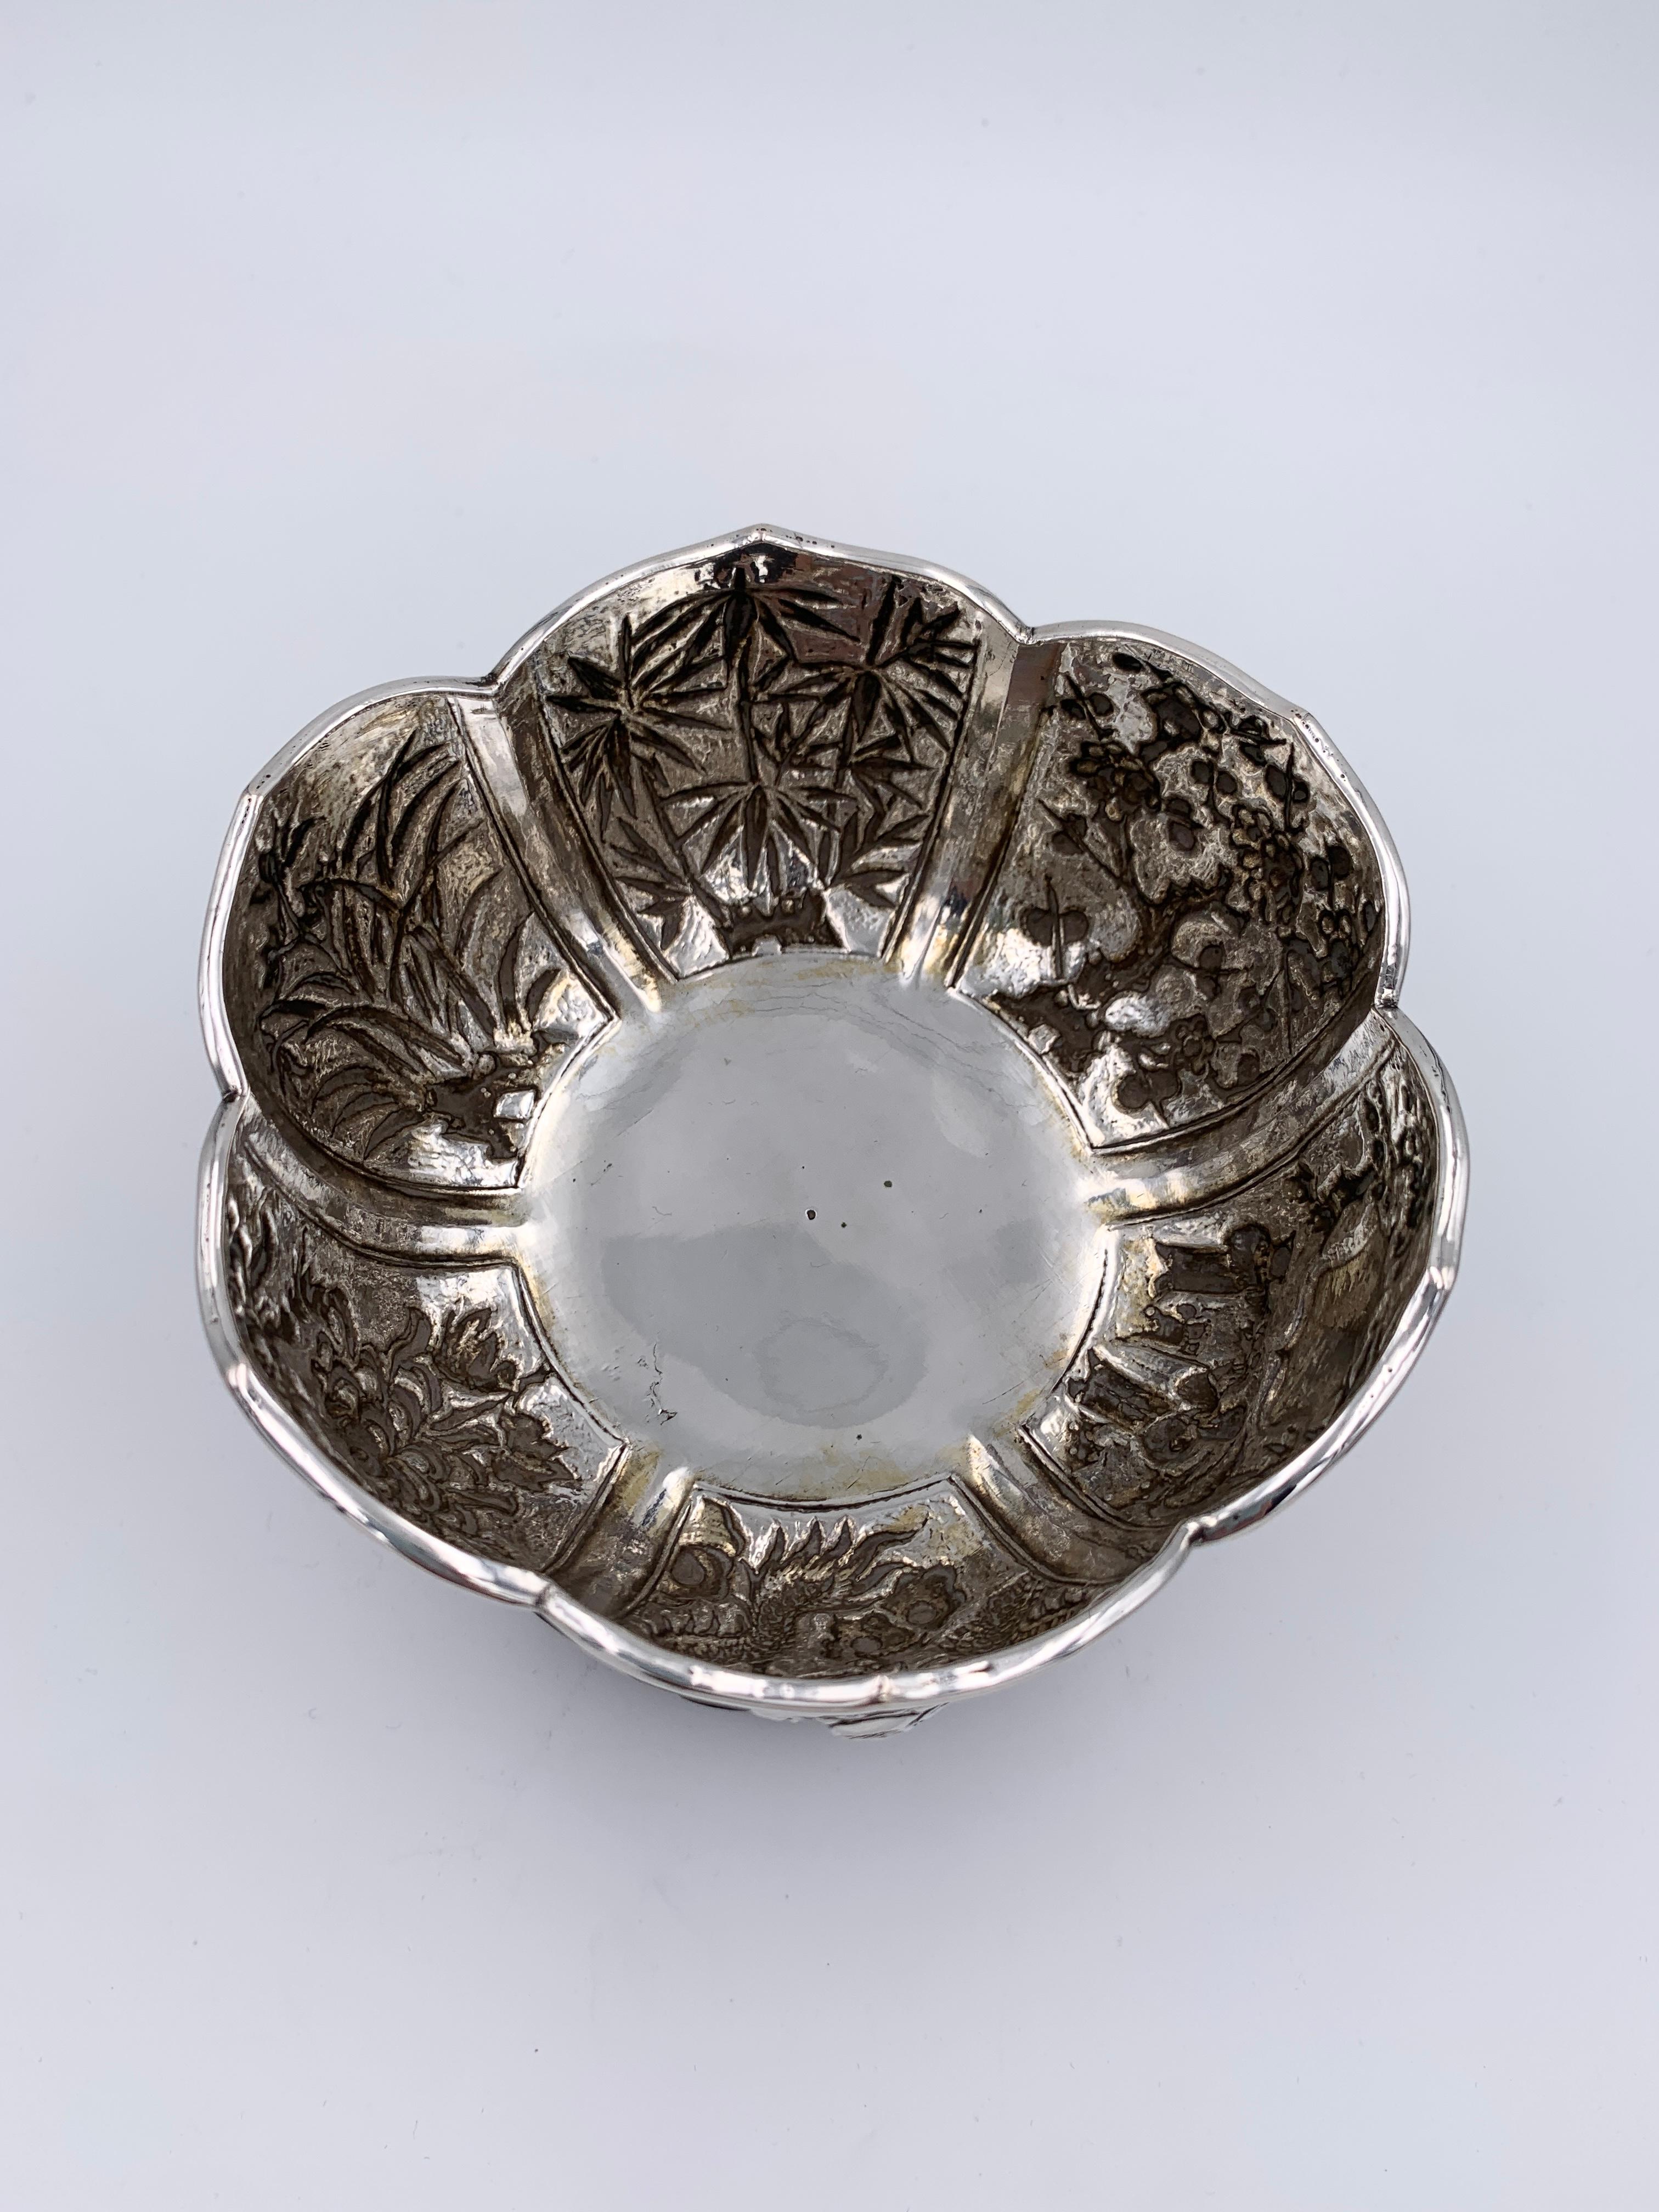 Paire de bols en argent d'exportation chinois sur leurs supports en bois d'origine, vers 1880. Les deux bols, composés de six panneaux en forme de lotus, sont posés sur un support sculpté de nuages ajourés. Chaque panneau est estampé et ciselé,